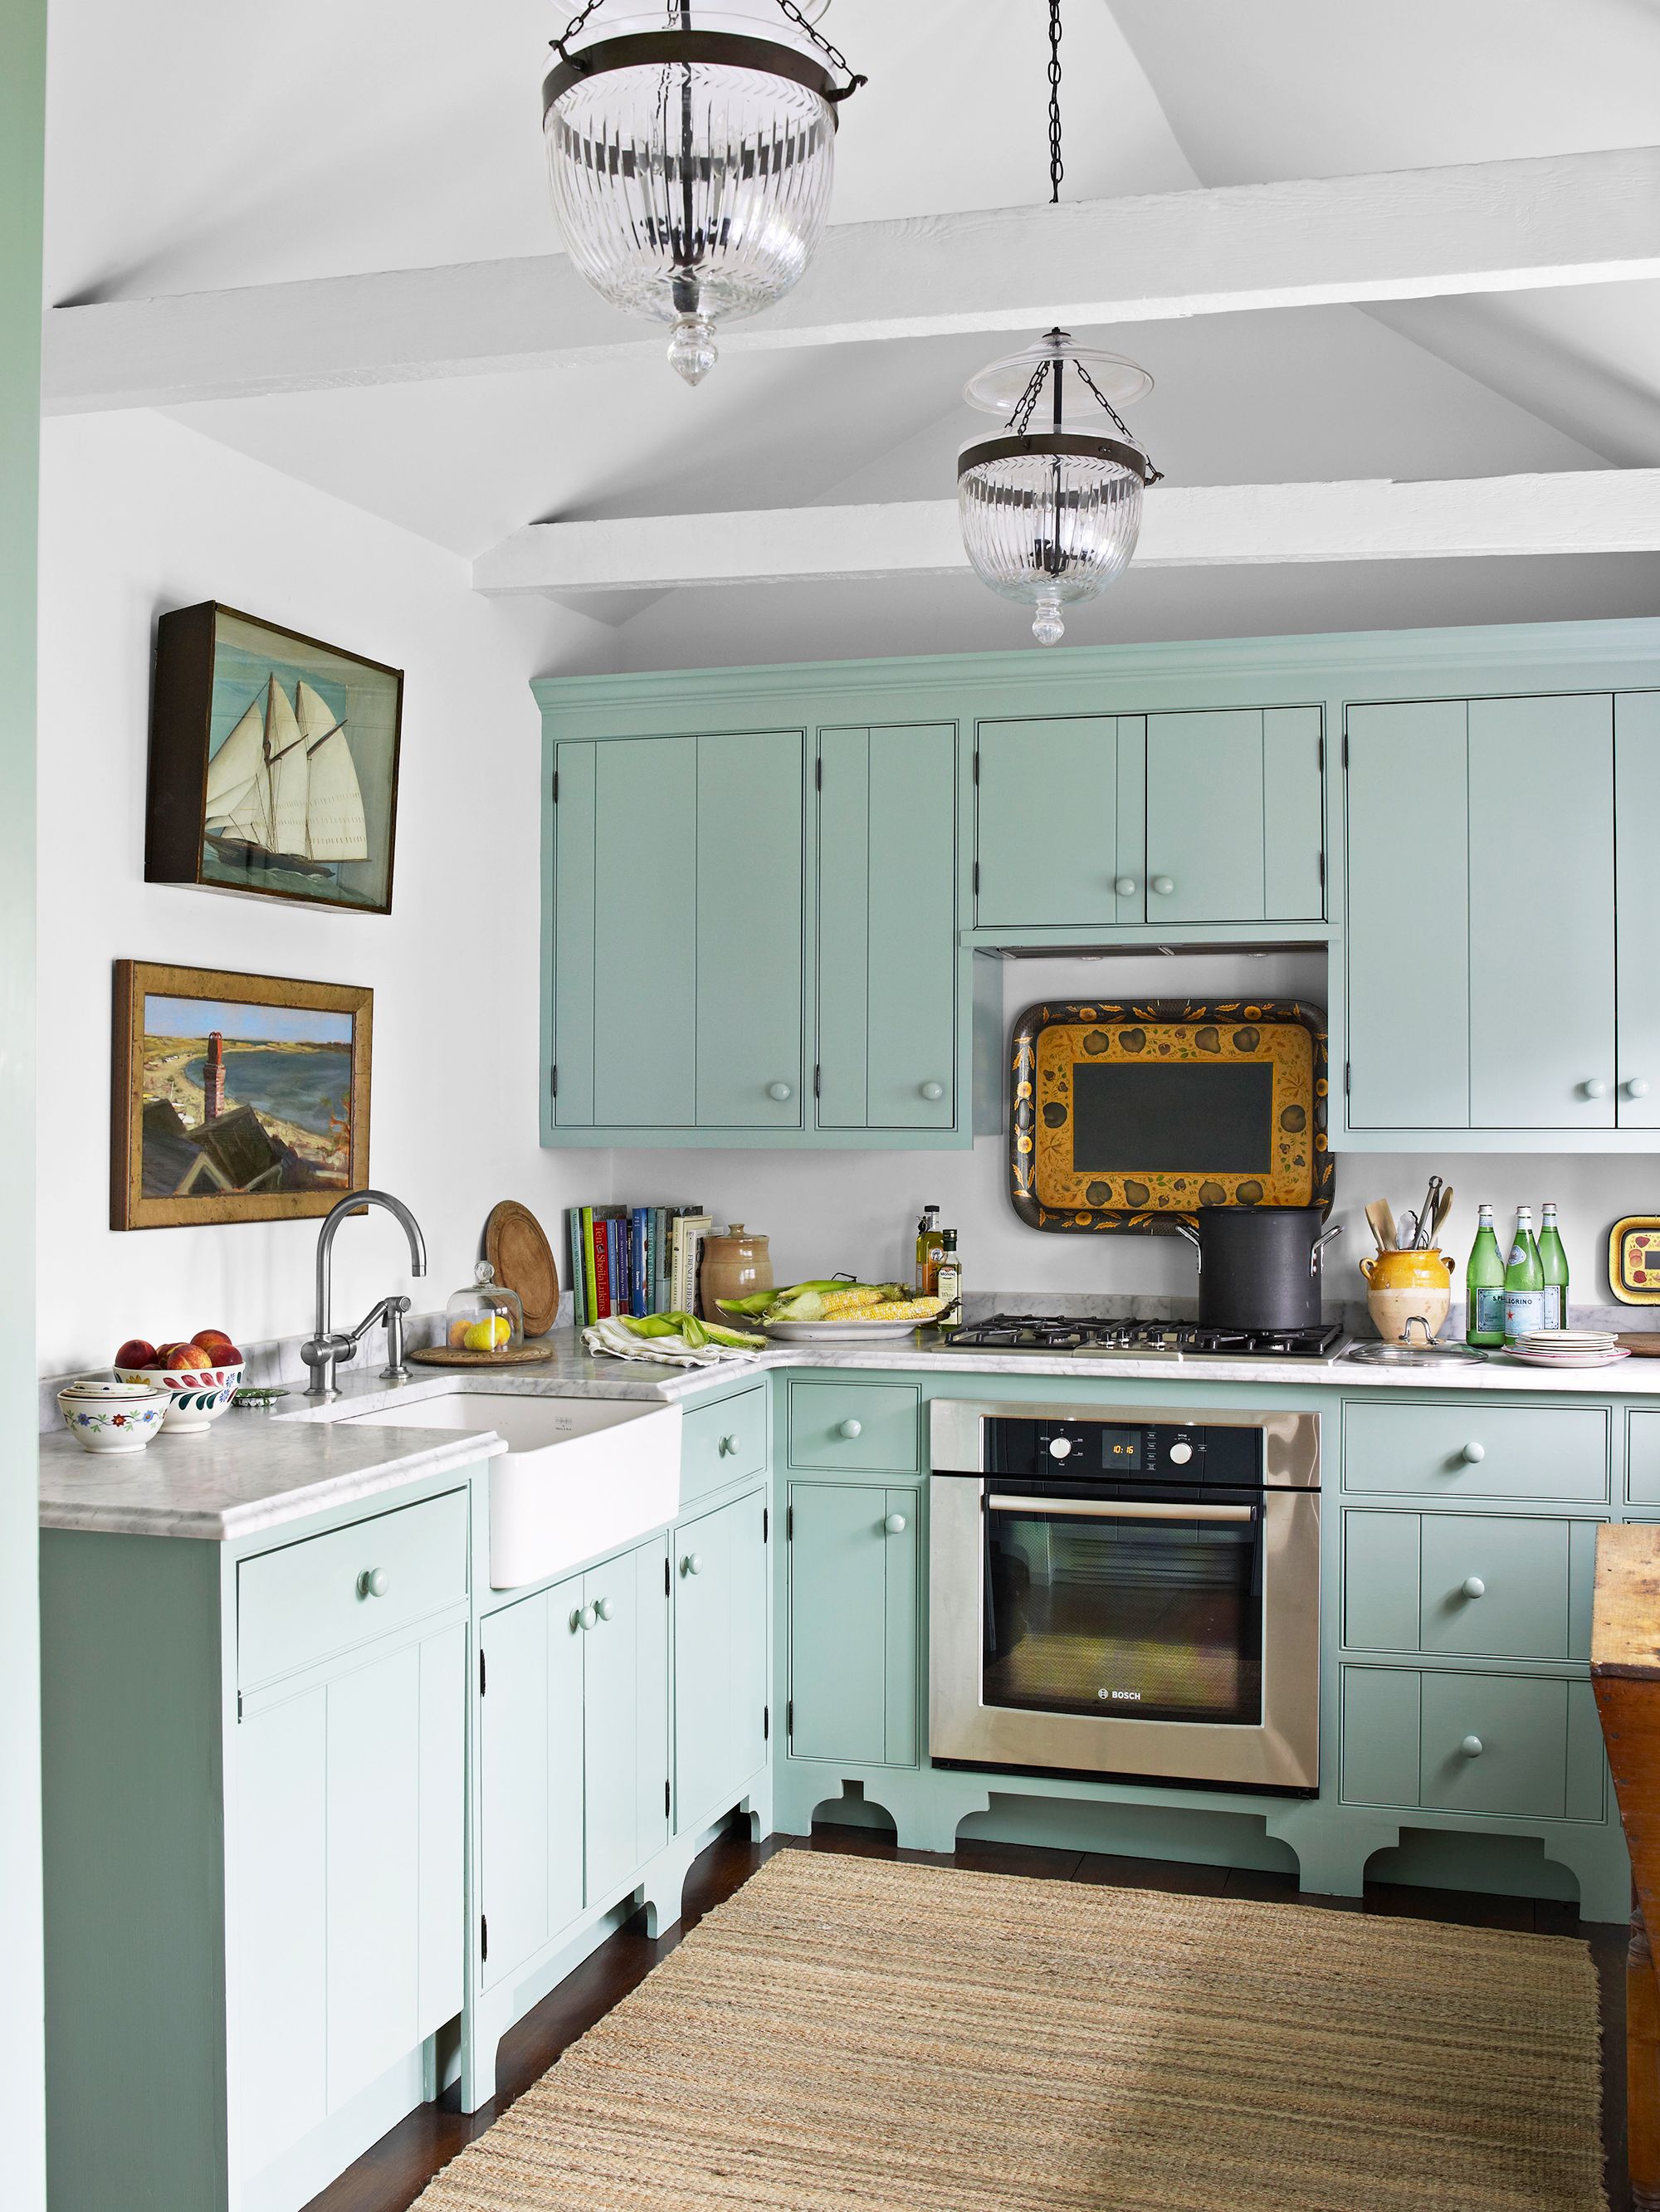 30 DIY Kitchen Decor Ideas | Best Kitchen Wall Decor